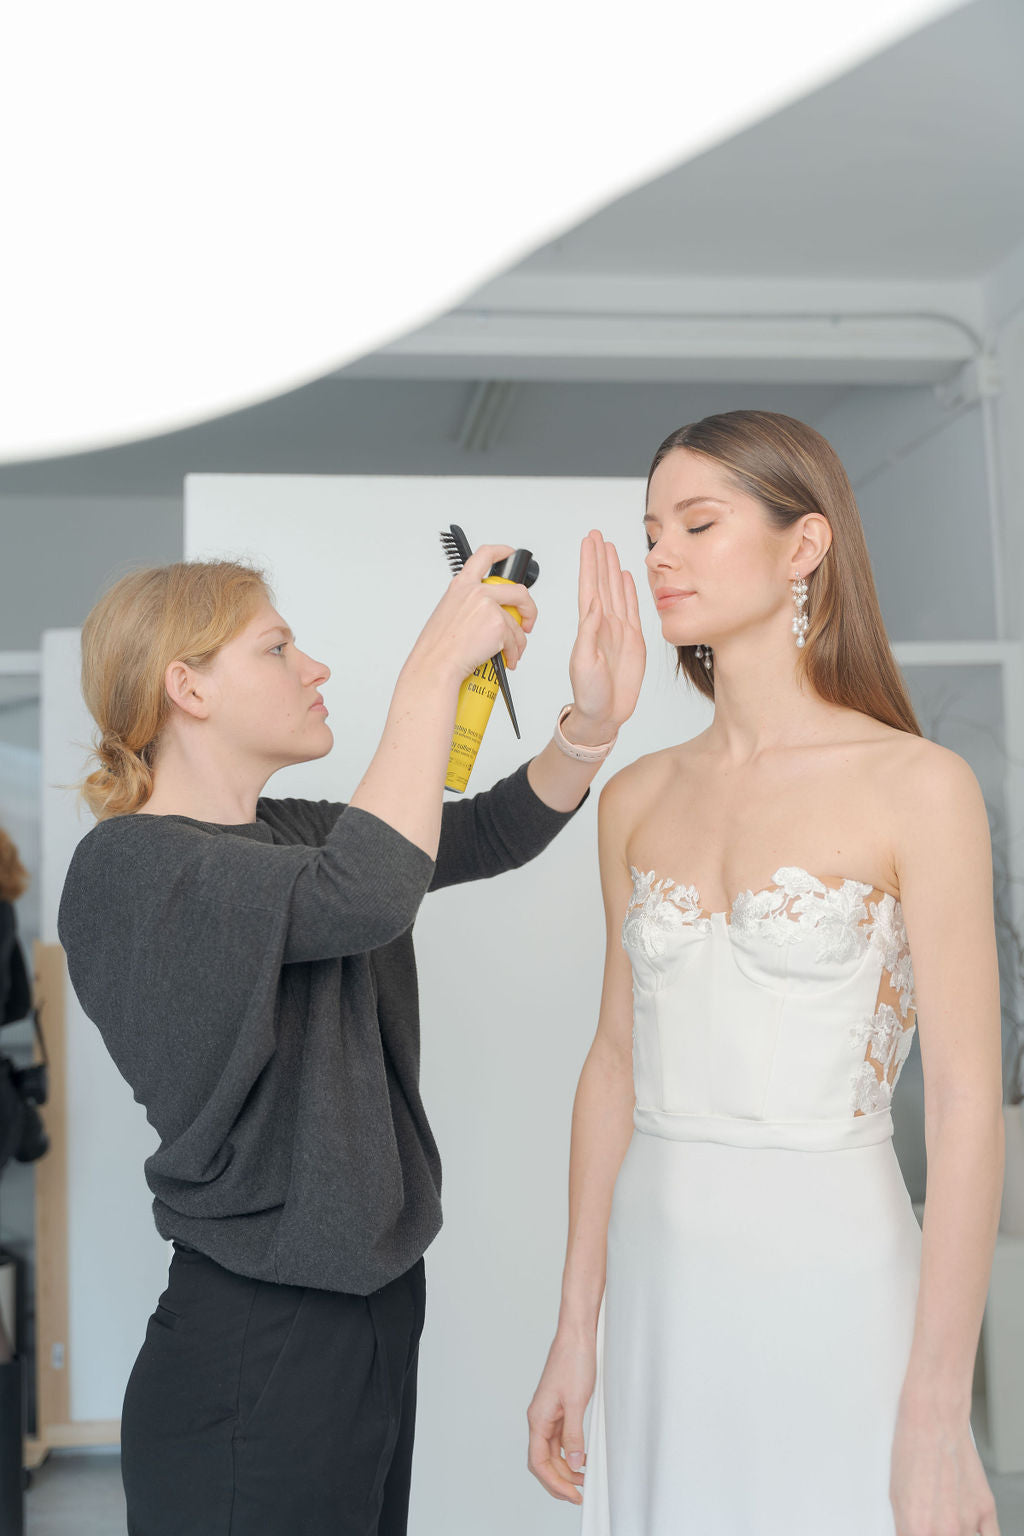 Photo prise lors d'un shooting photo de la mariée entrain de se faire coiffer par la maquilleuse coiffeuse de son mariage